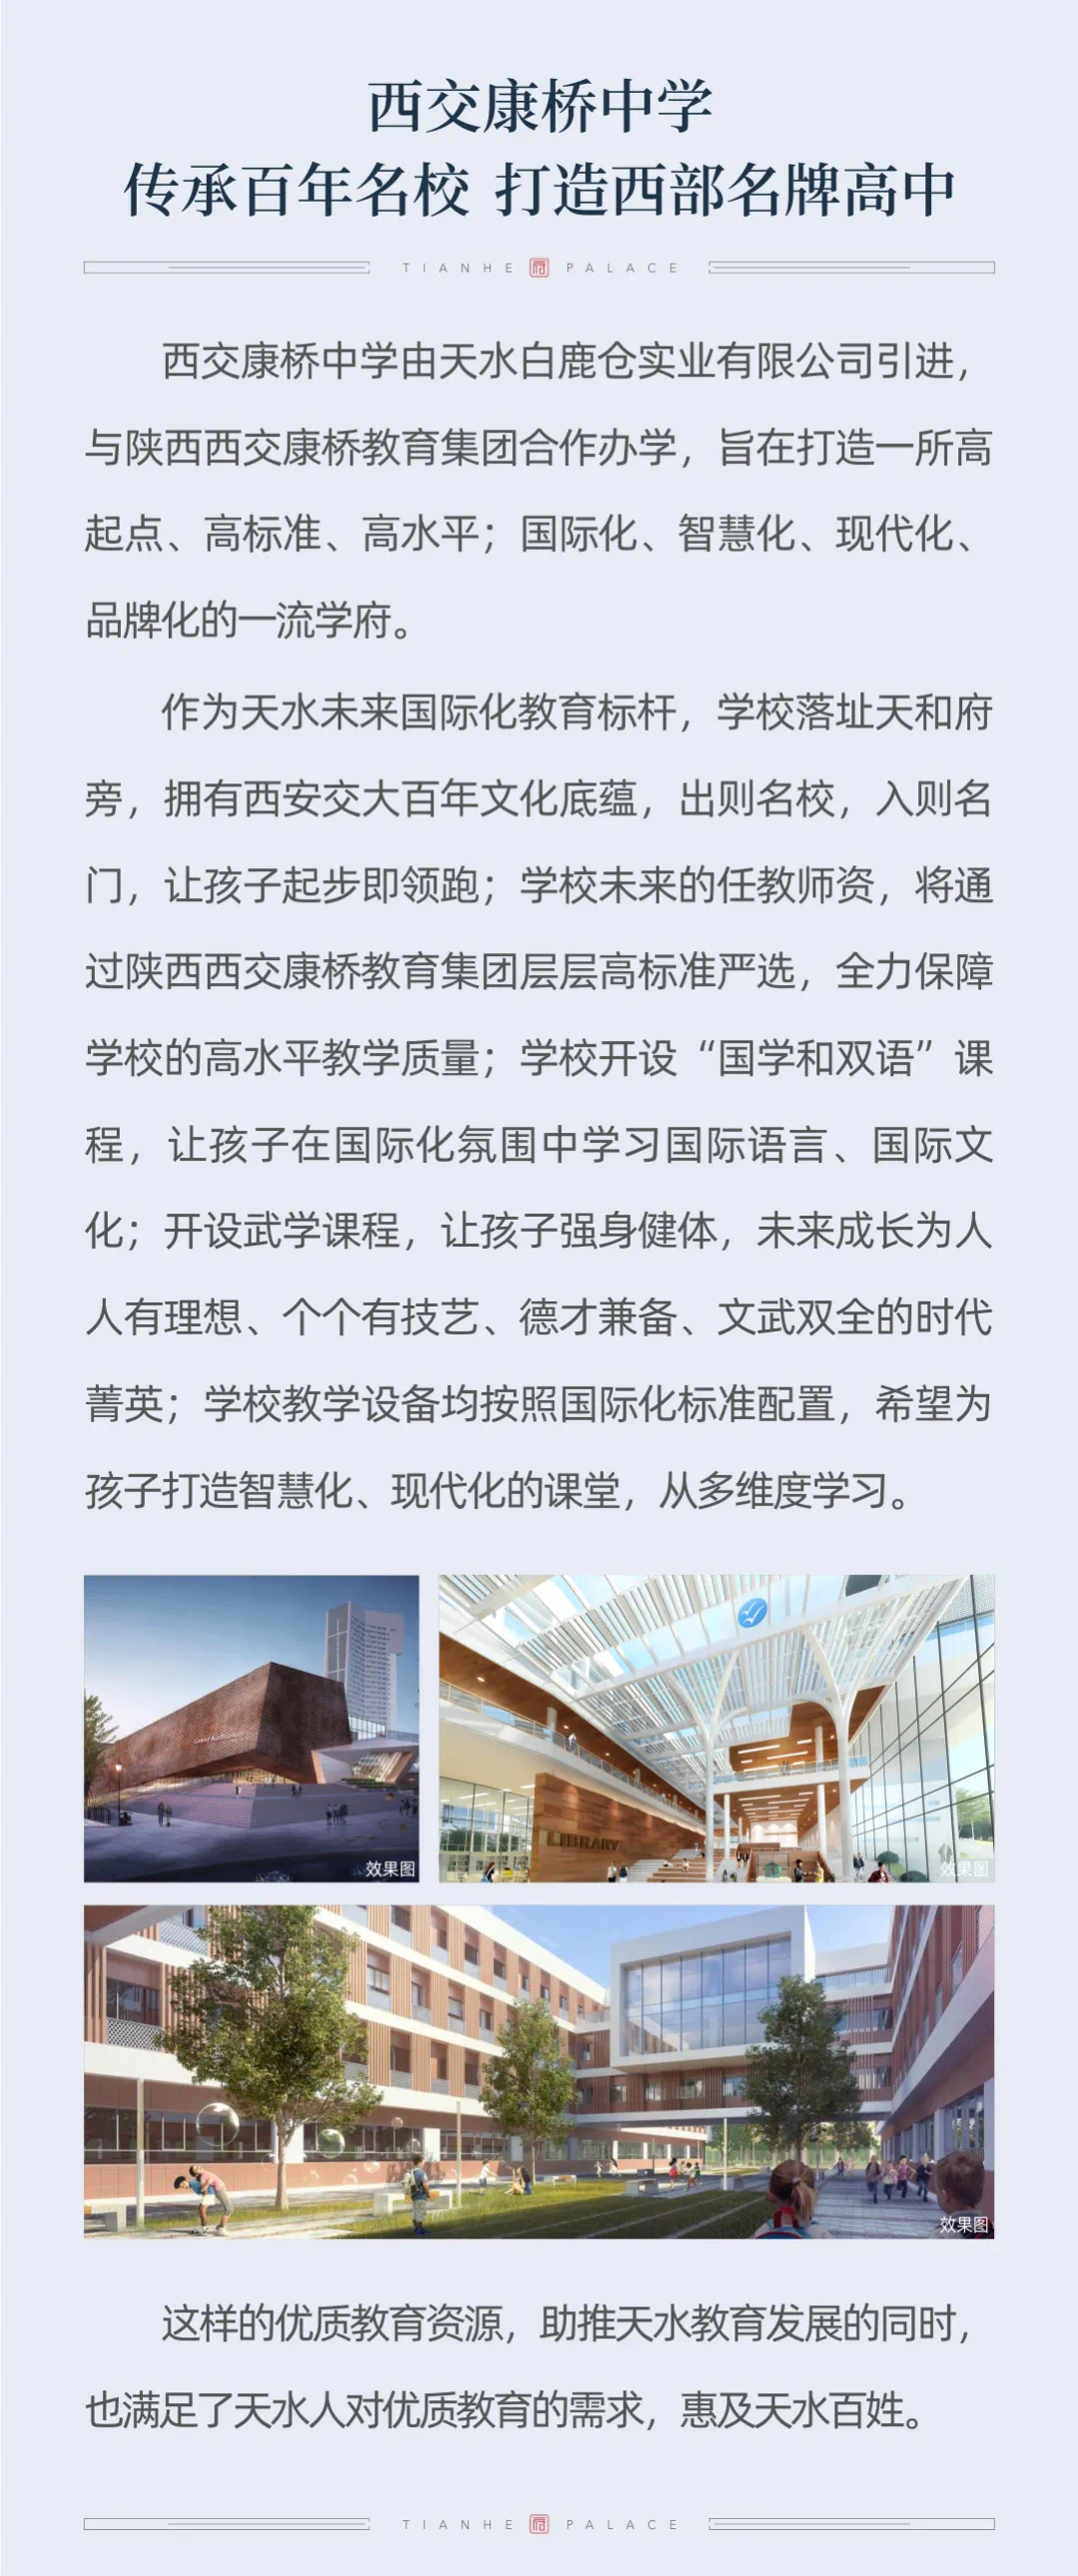 西交康桥中学奠基开工仪式即将启动-天水搜狐焦点